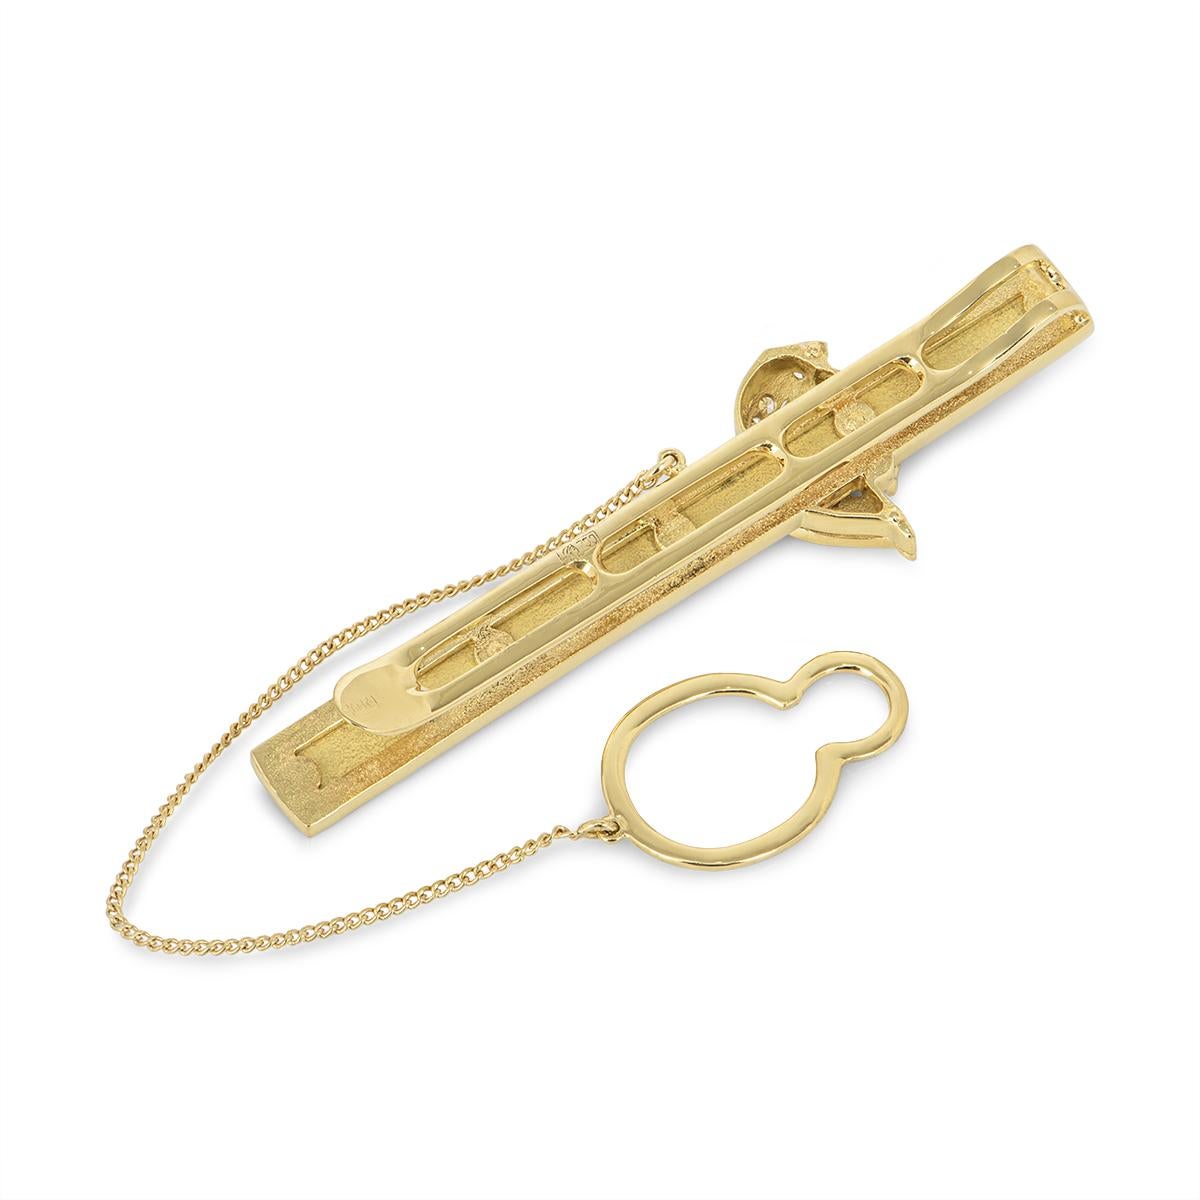 tie clip and cufflink set gold